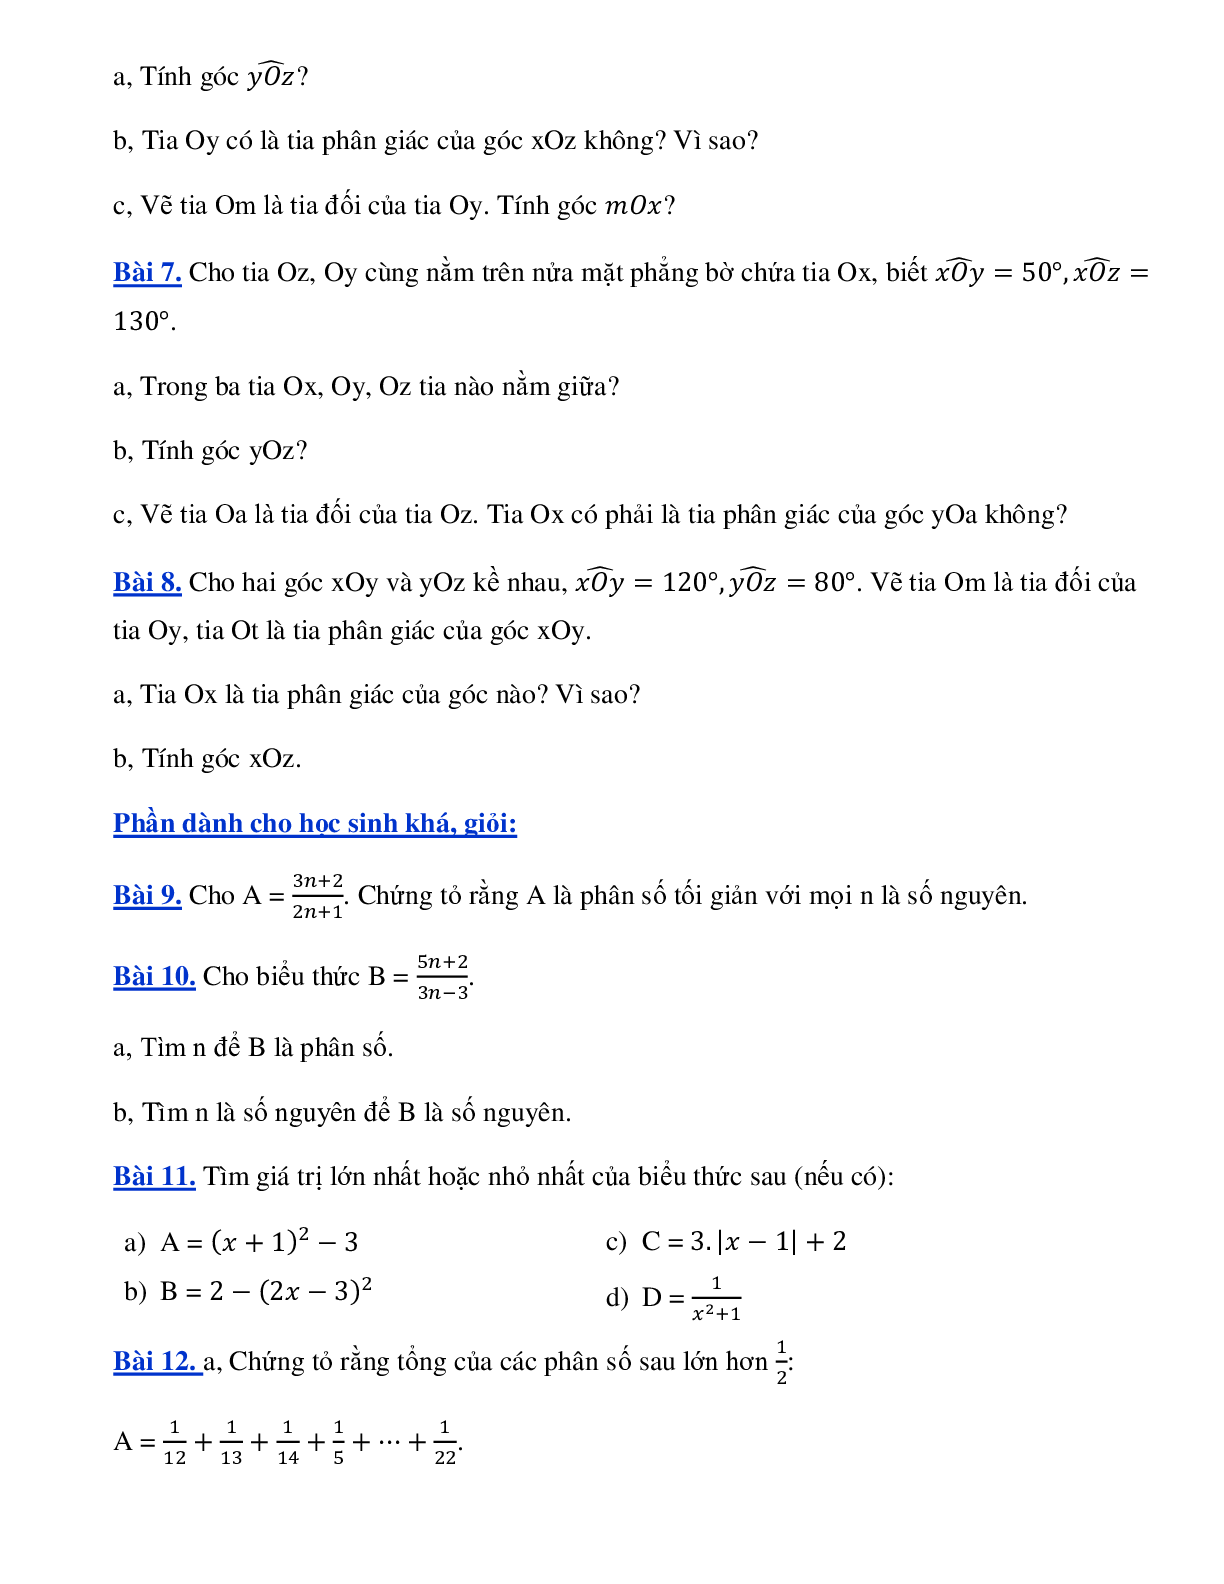 Phiếu bài tập tuần 27+28 - toán 6 (trang 2)